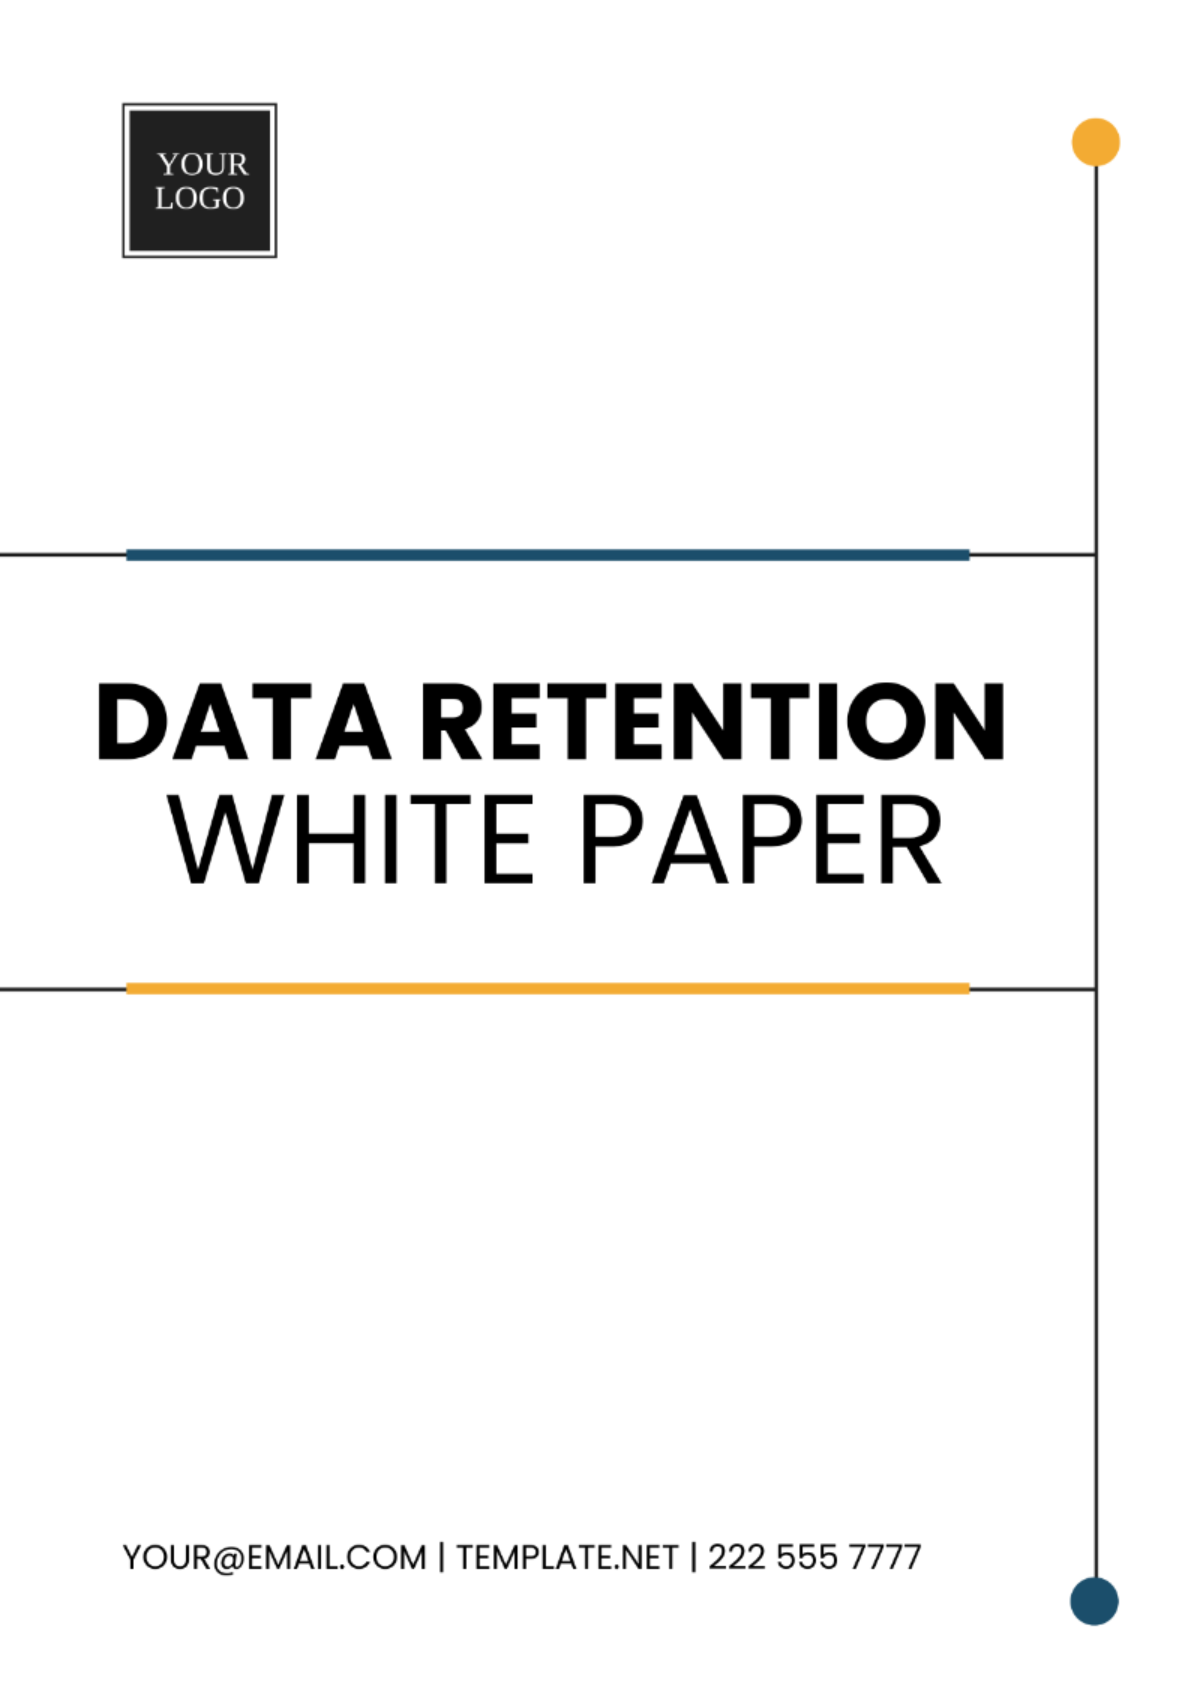 Data Retention White Paper Template